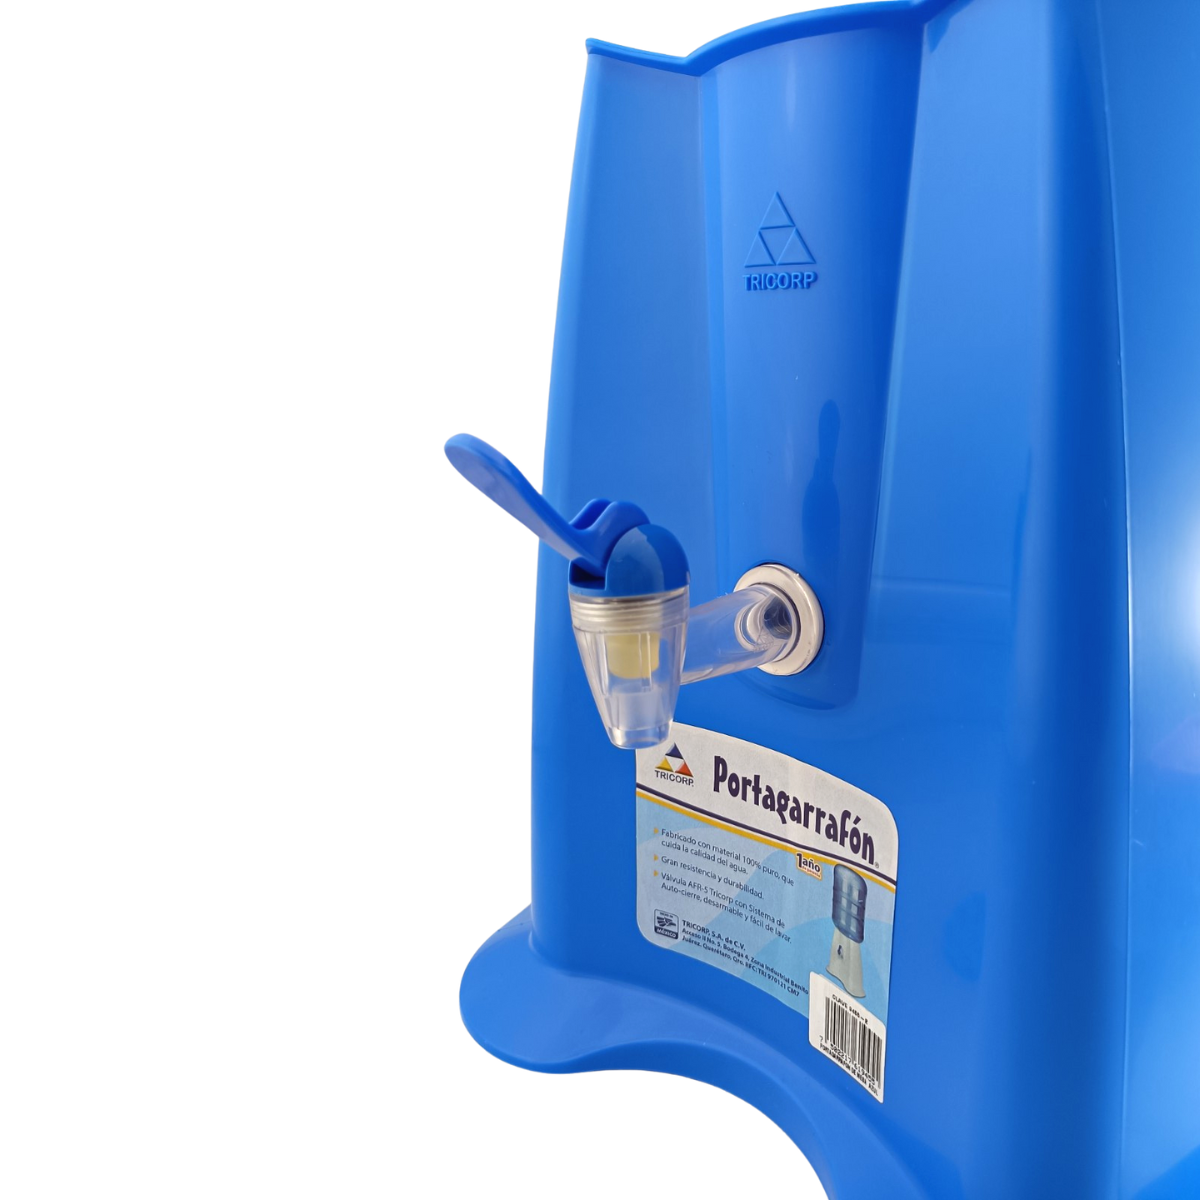 Porta Garrafón con Dispensador de Plástico para Agua Azul